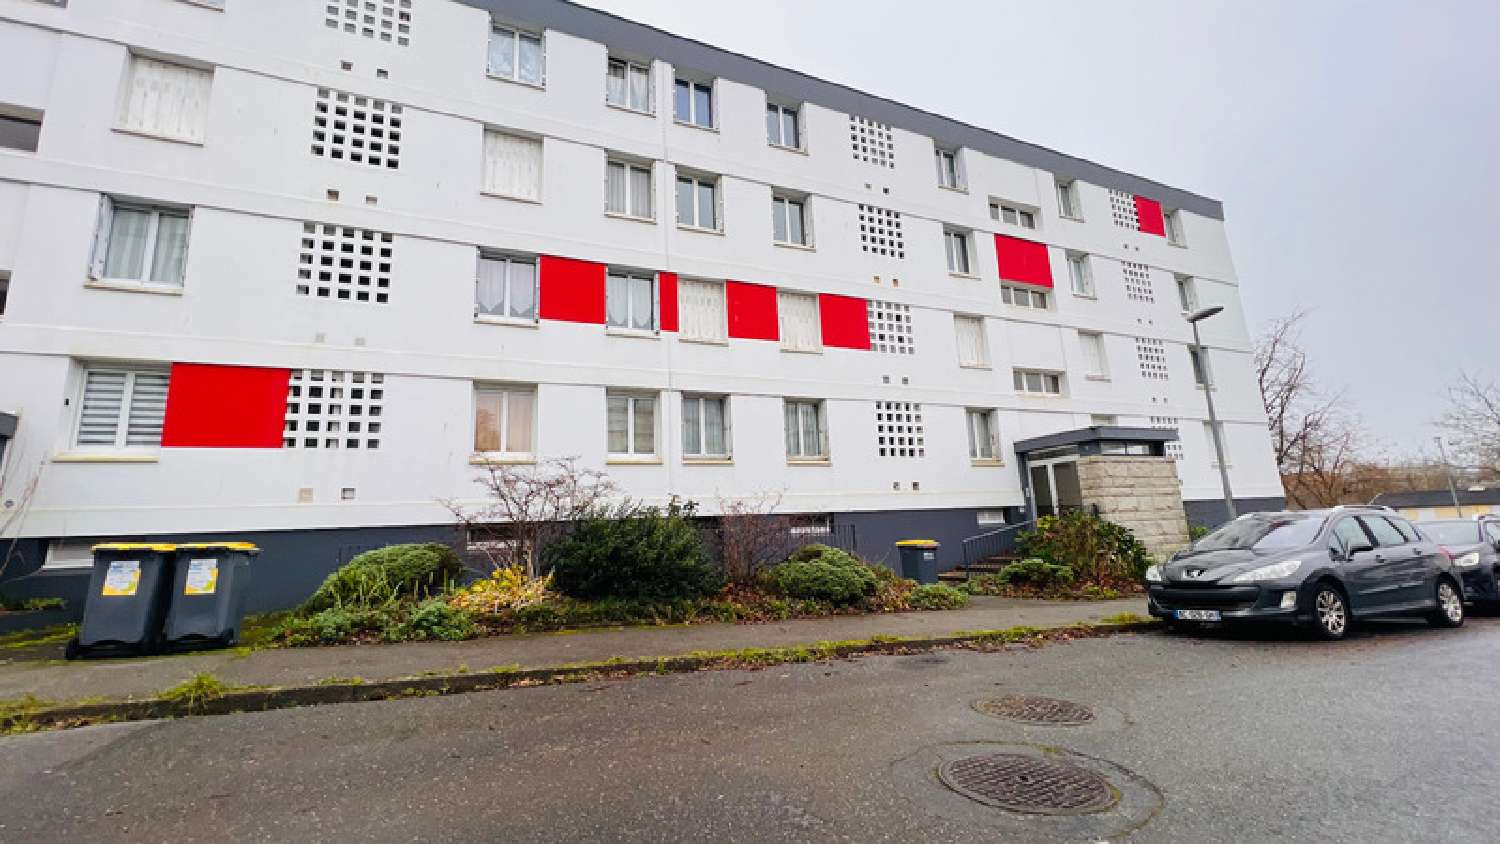  for sale apartment Brest Finistère 1